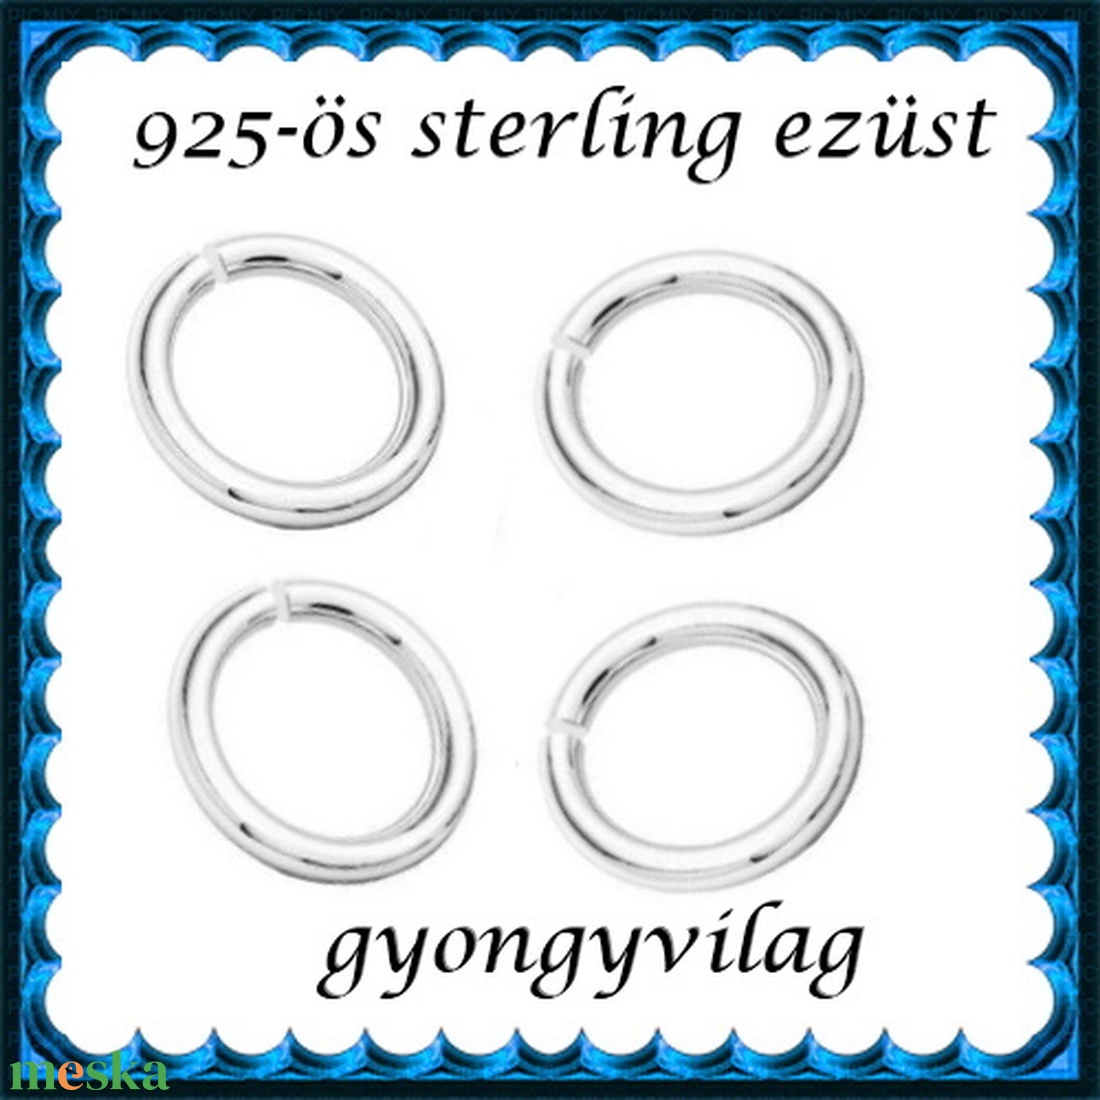 925-ös sterling ezüst ékszerkellék: karika nyitott ESZK NY 3x0,8 mm 5db/csomag - gyöngy, ékszerkellék - egyéb alkatrész - Meska.hu